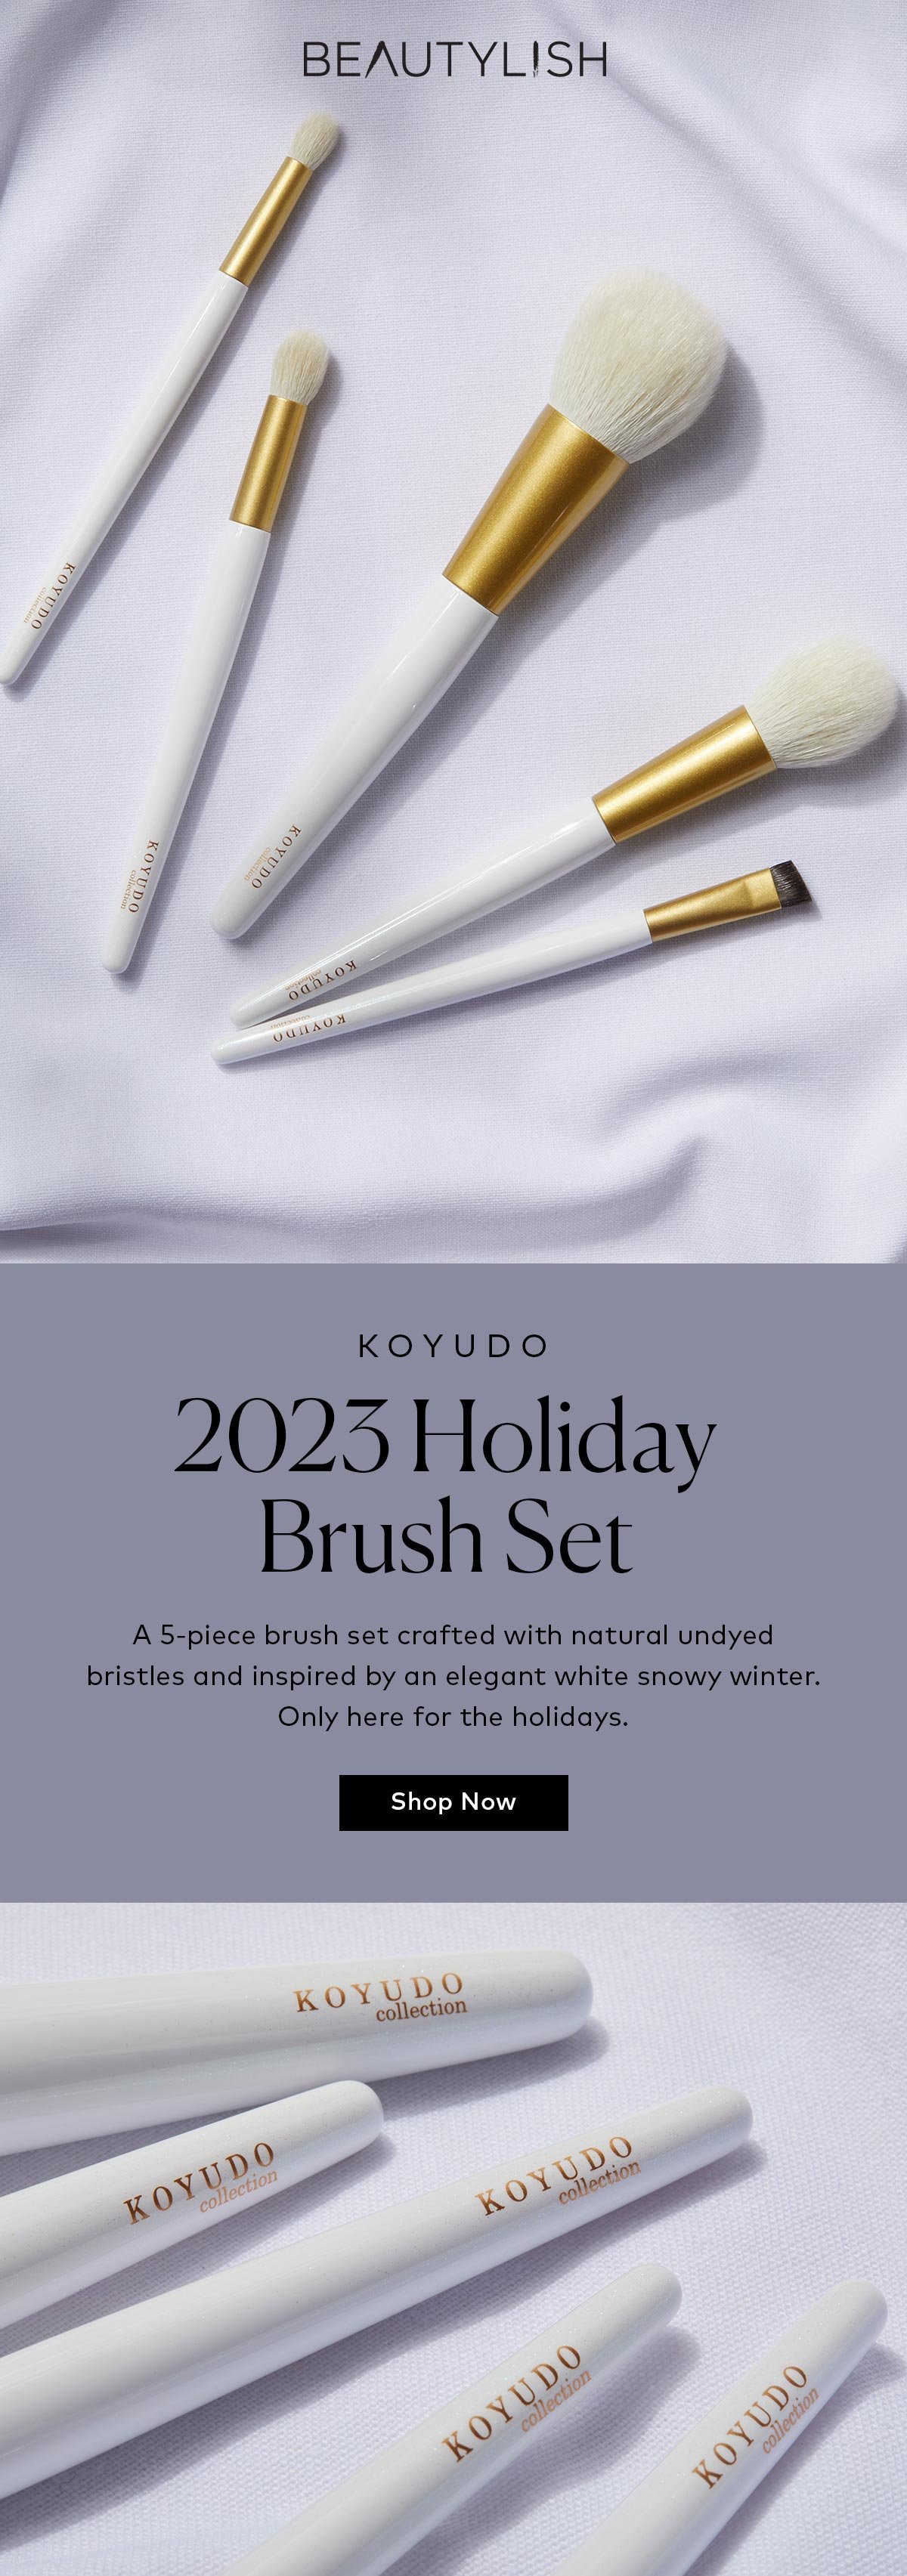 Shop the 2023 KOYUDO Holiday Brush Set on Beautylish.com! 